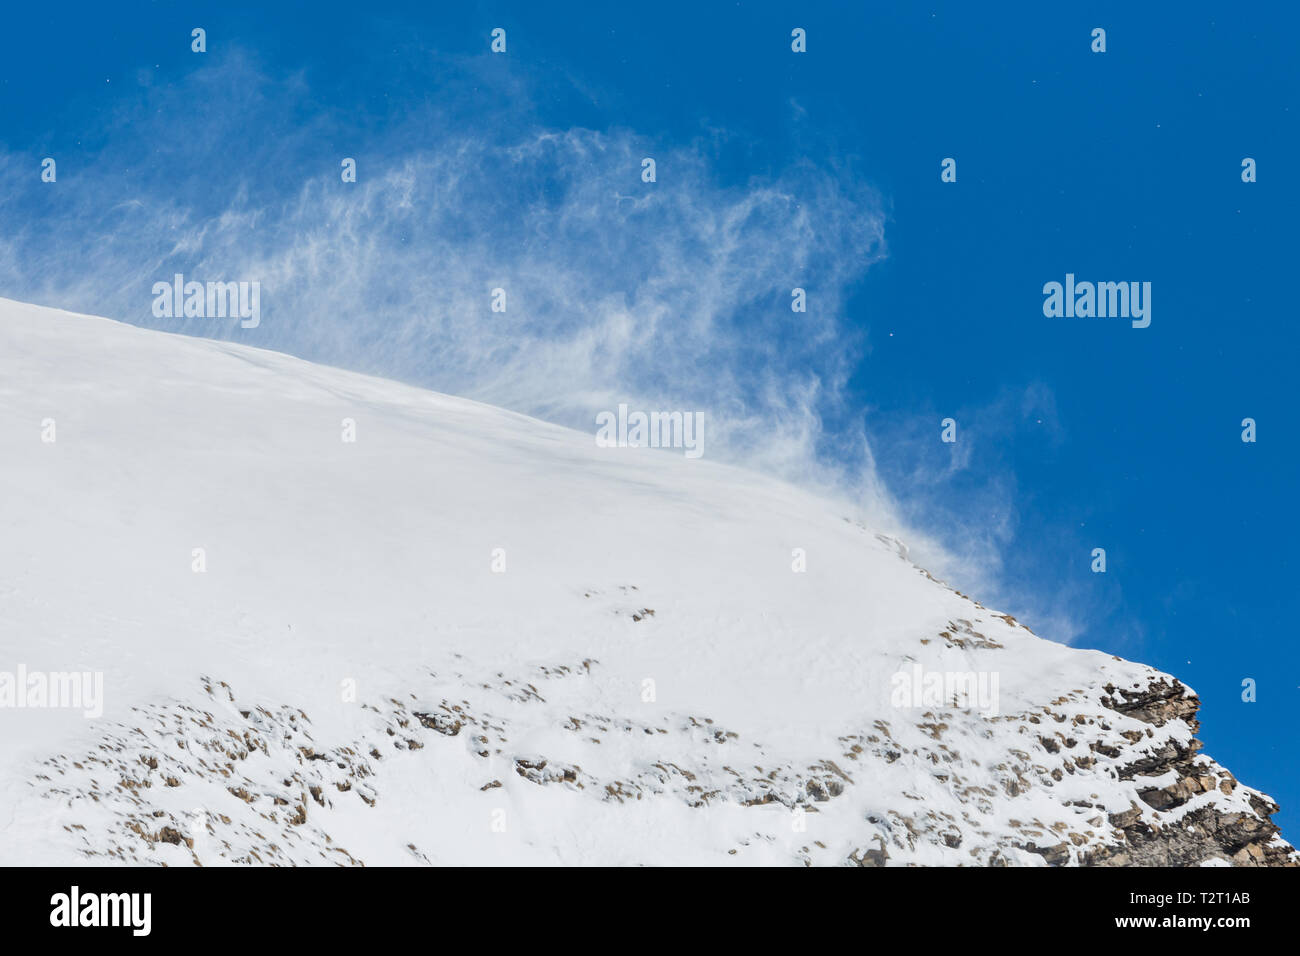 Fort naturel de bourrasques de vent neige tourbillonnante en montagne, ciel bleu, rock Banque D'Images